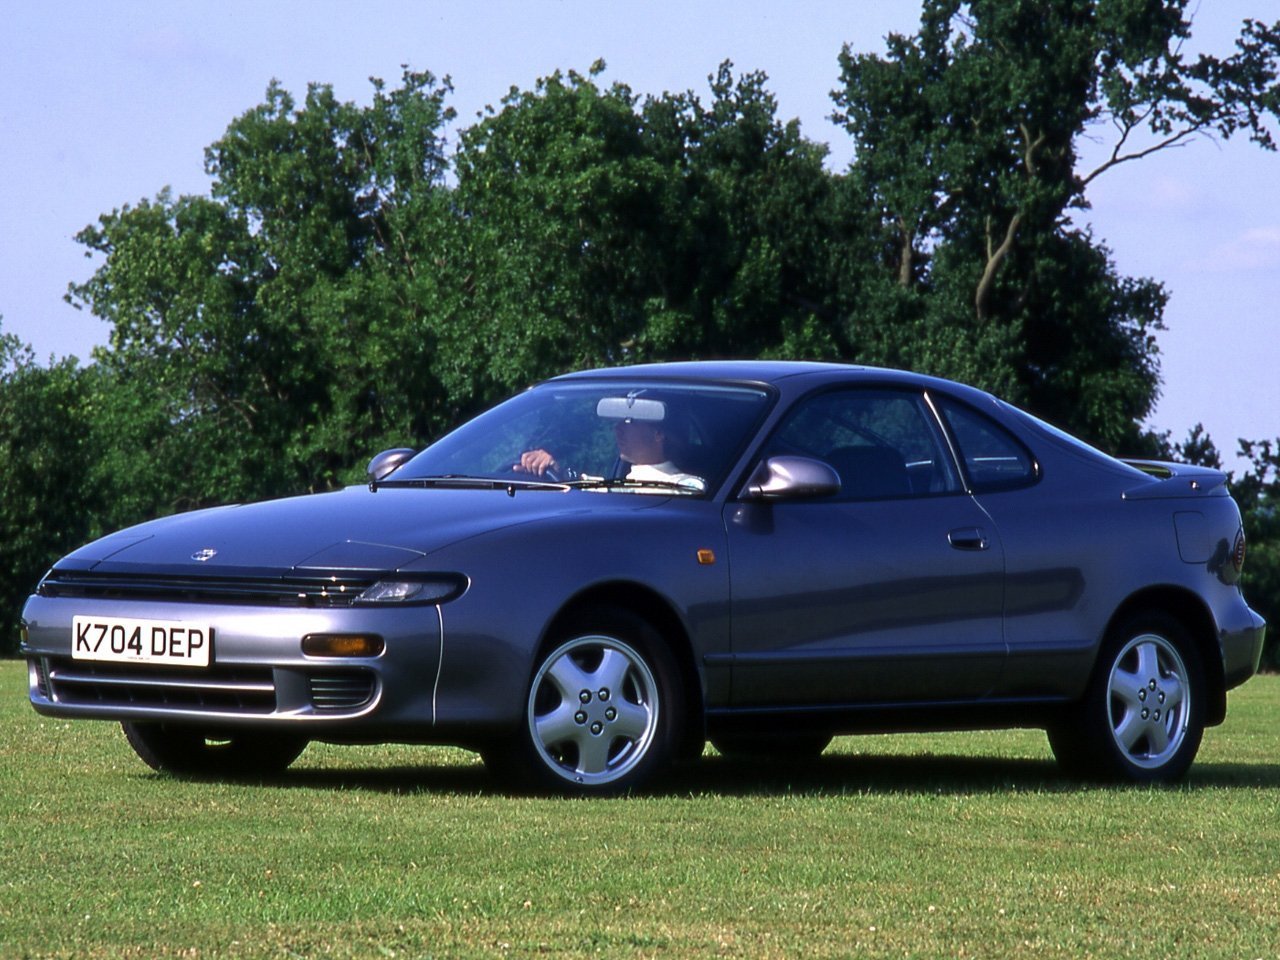 Toyota Celica 1989 - 1994